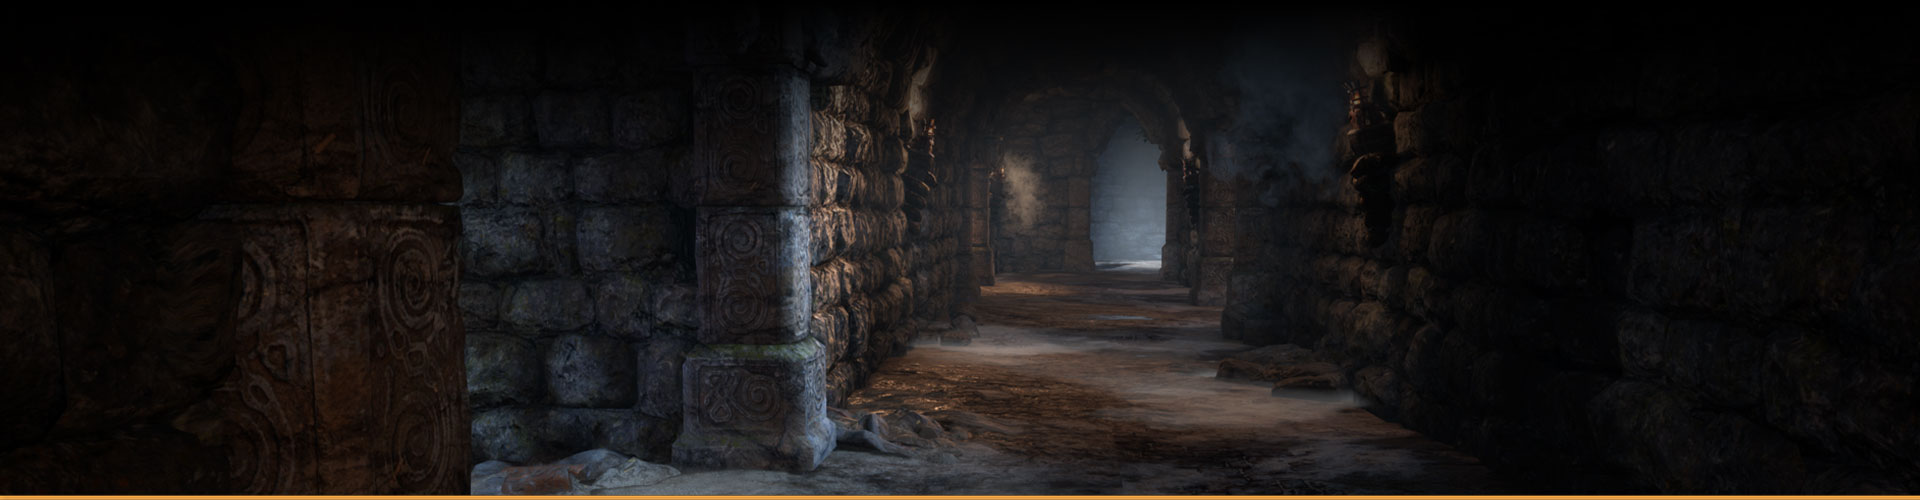 Пустой, тускло освещенный коридор со стенами из камня